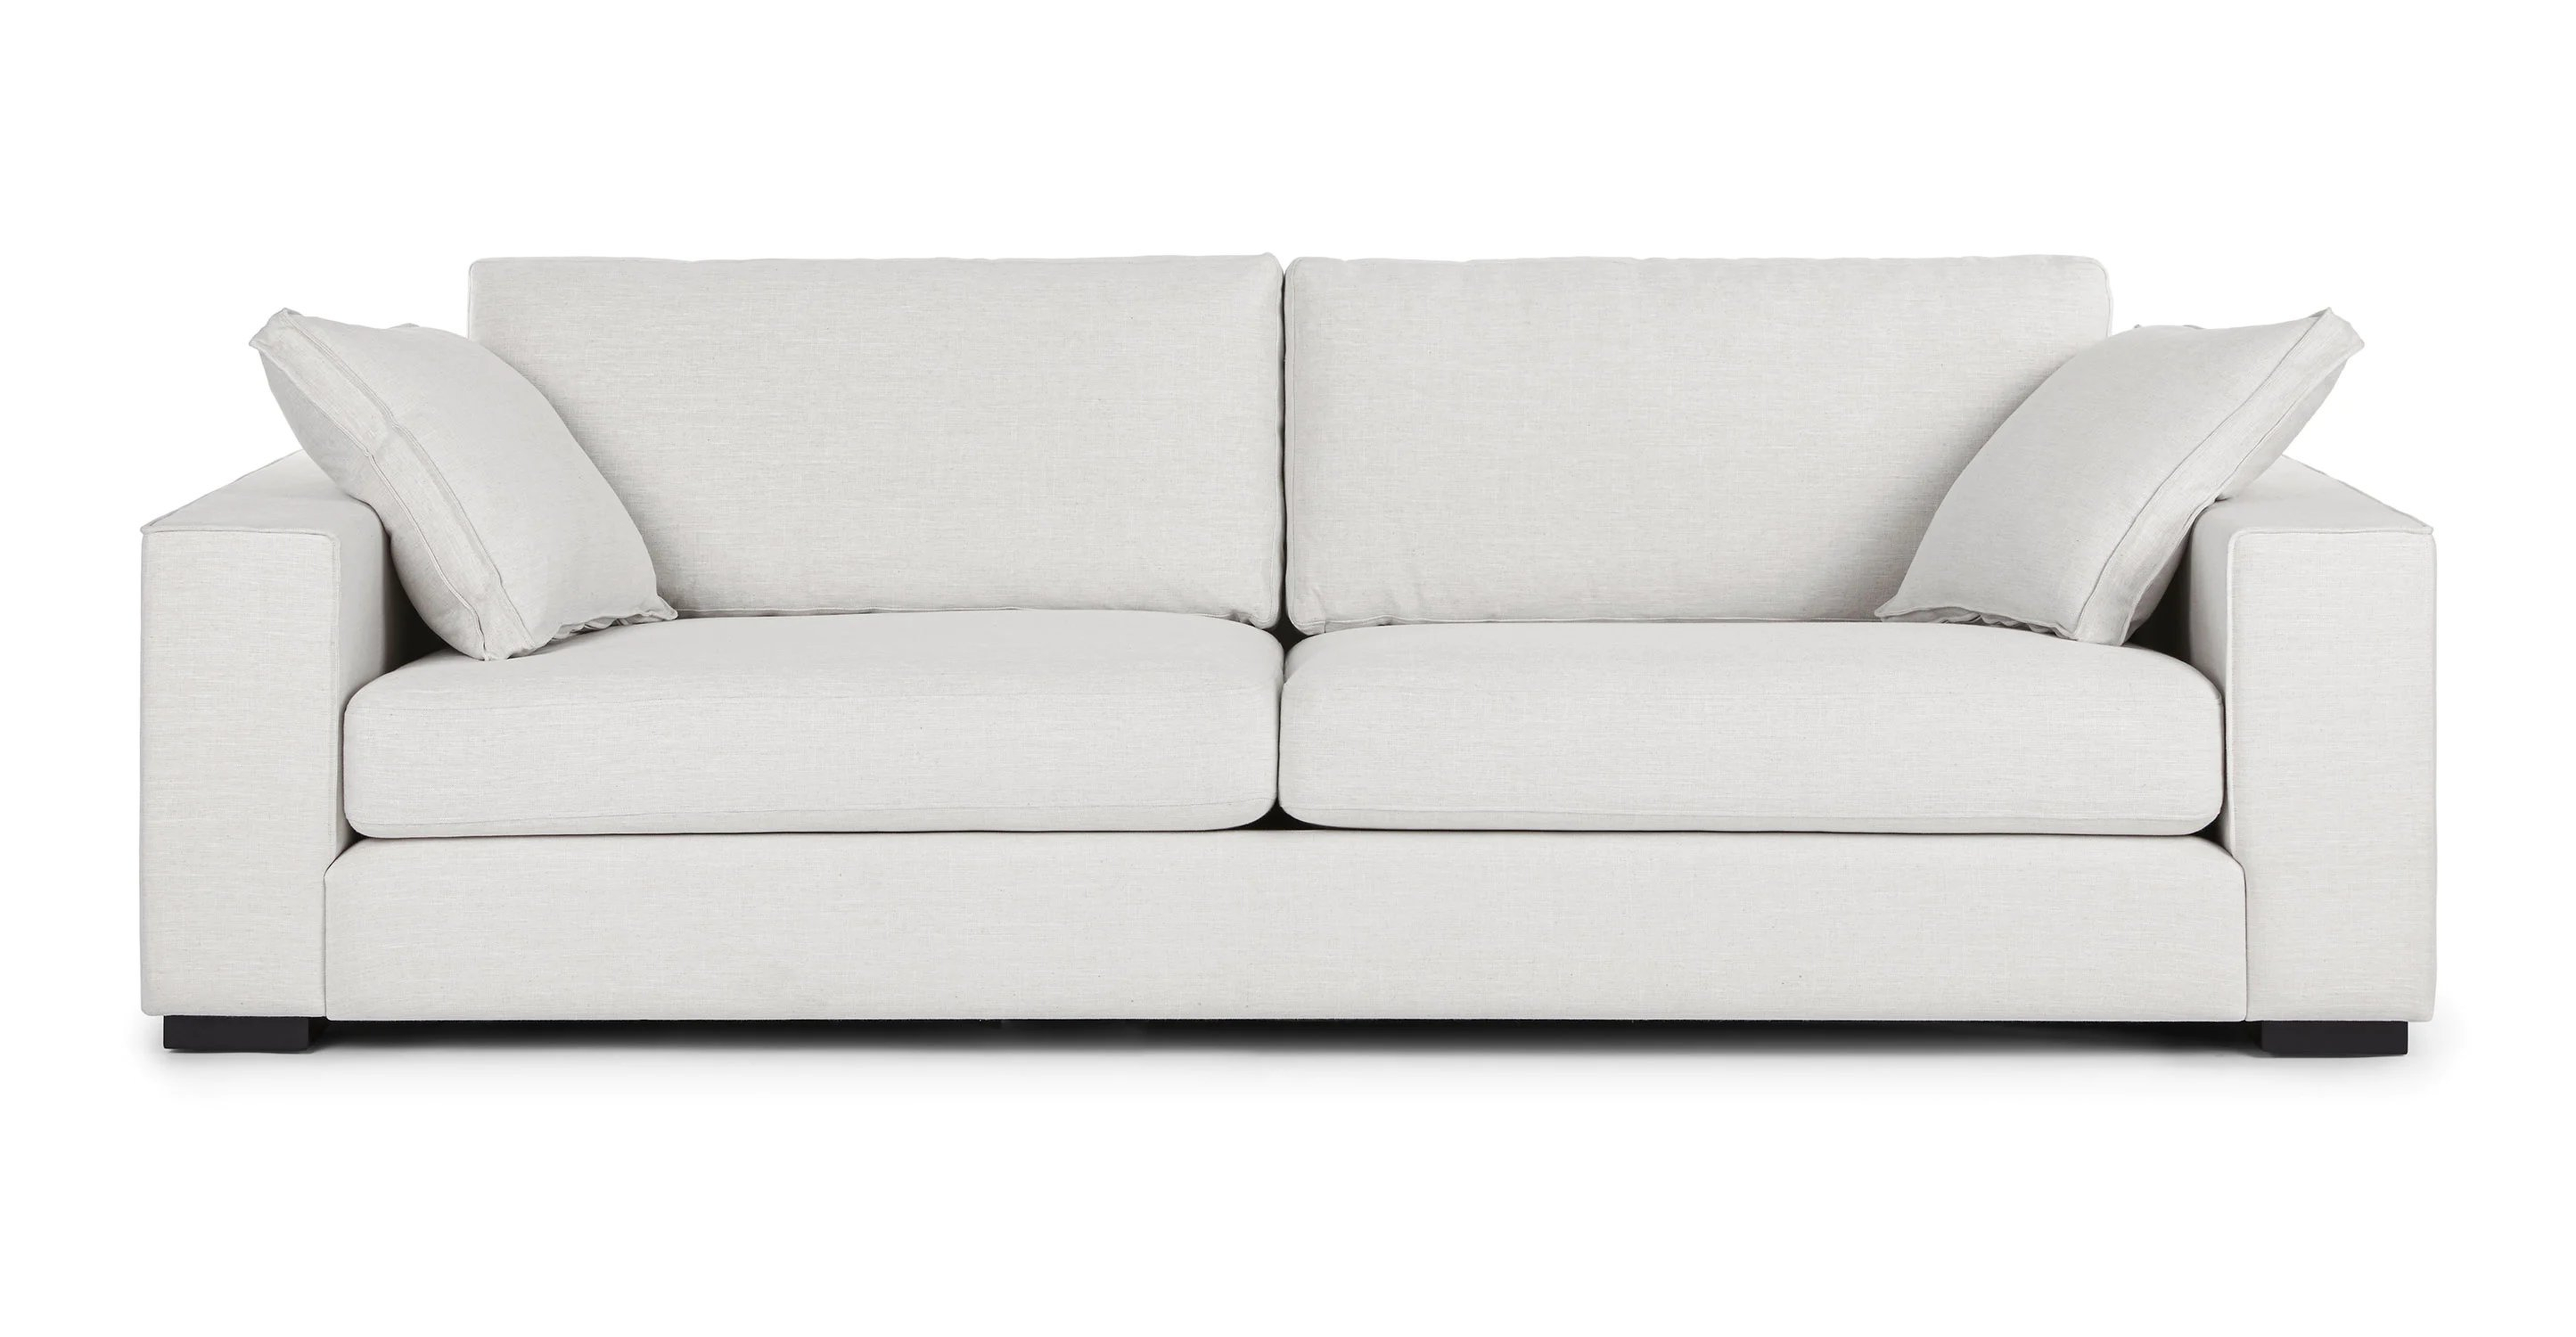 Sitka Quartz White Sofa - Article